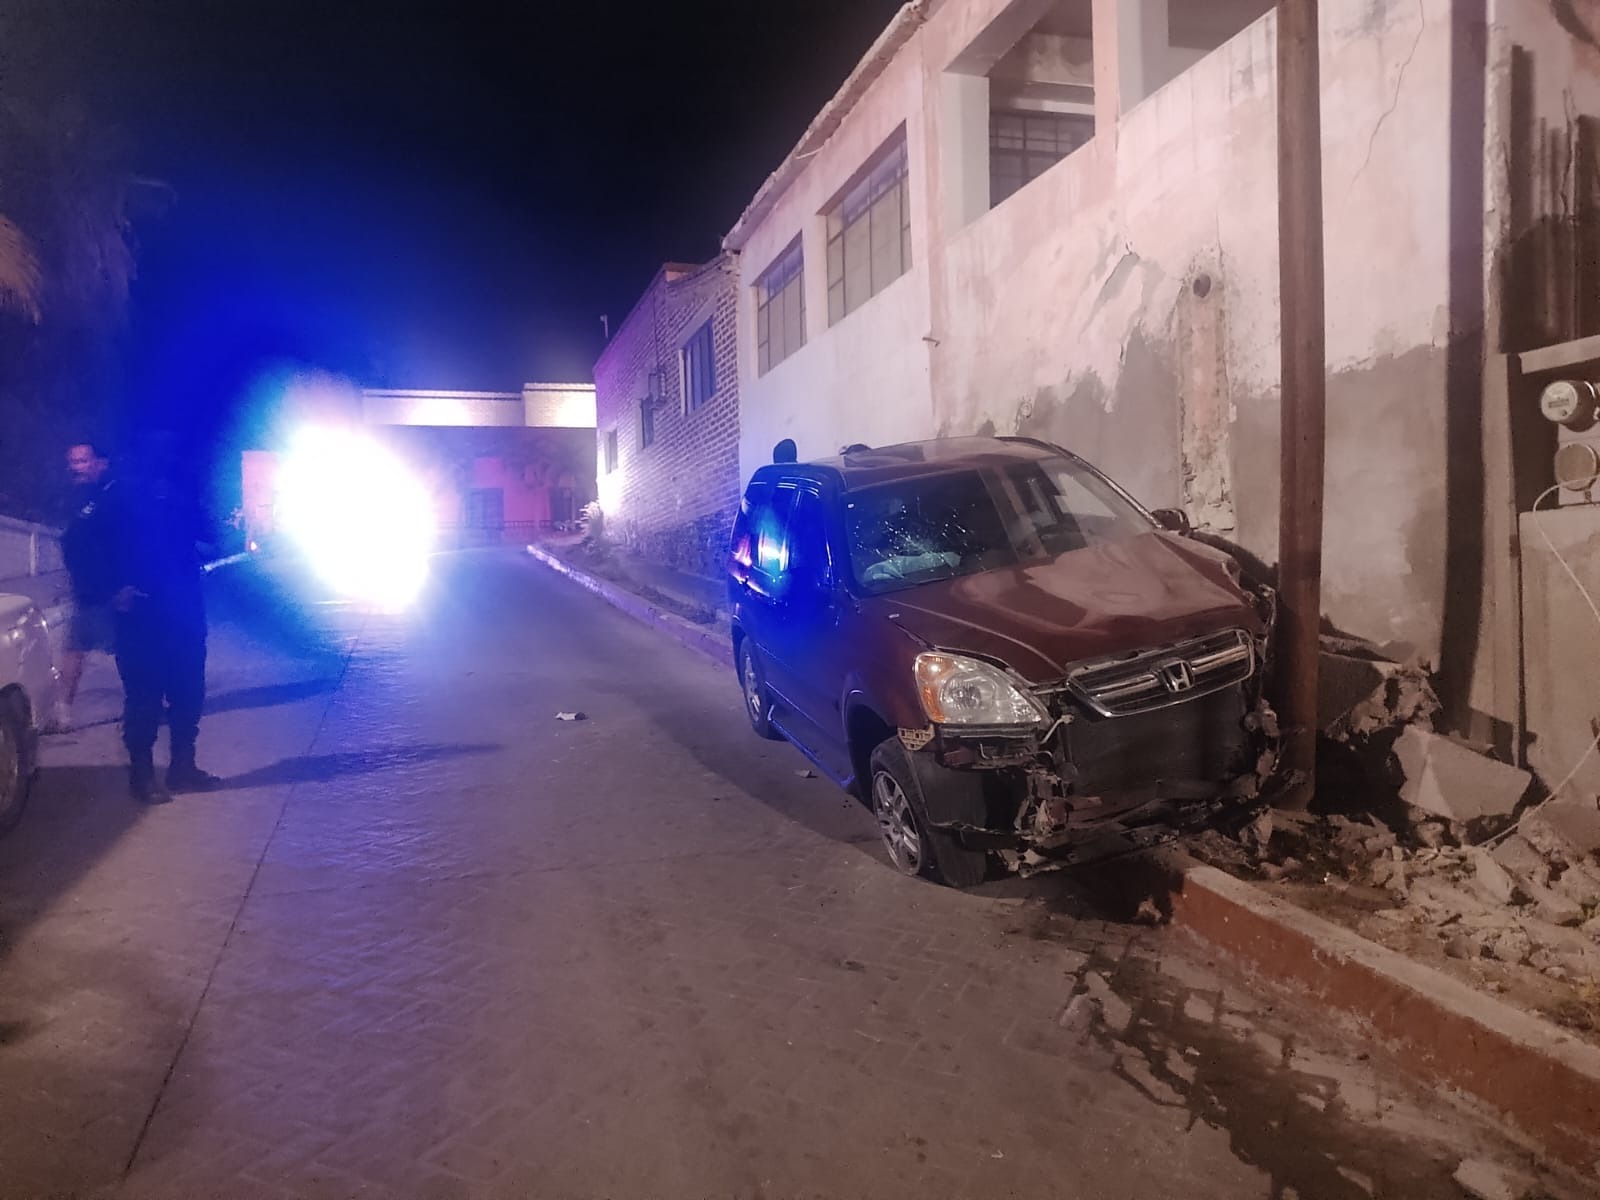 Camioneta chocada en Todos Santos